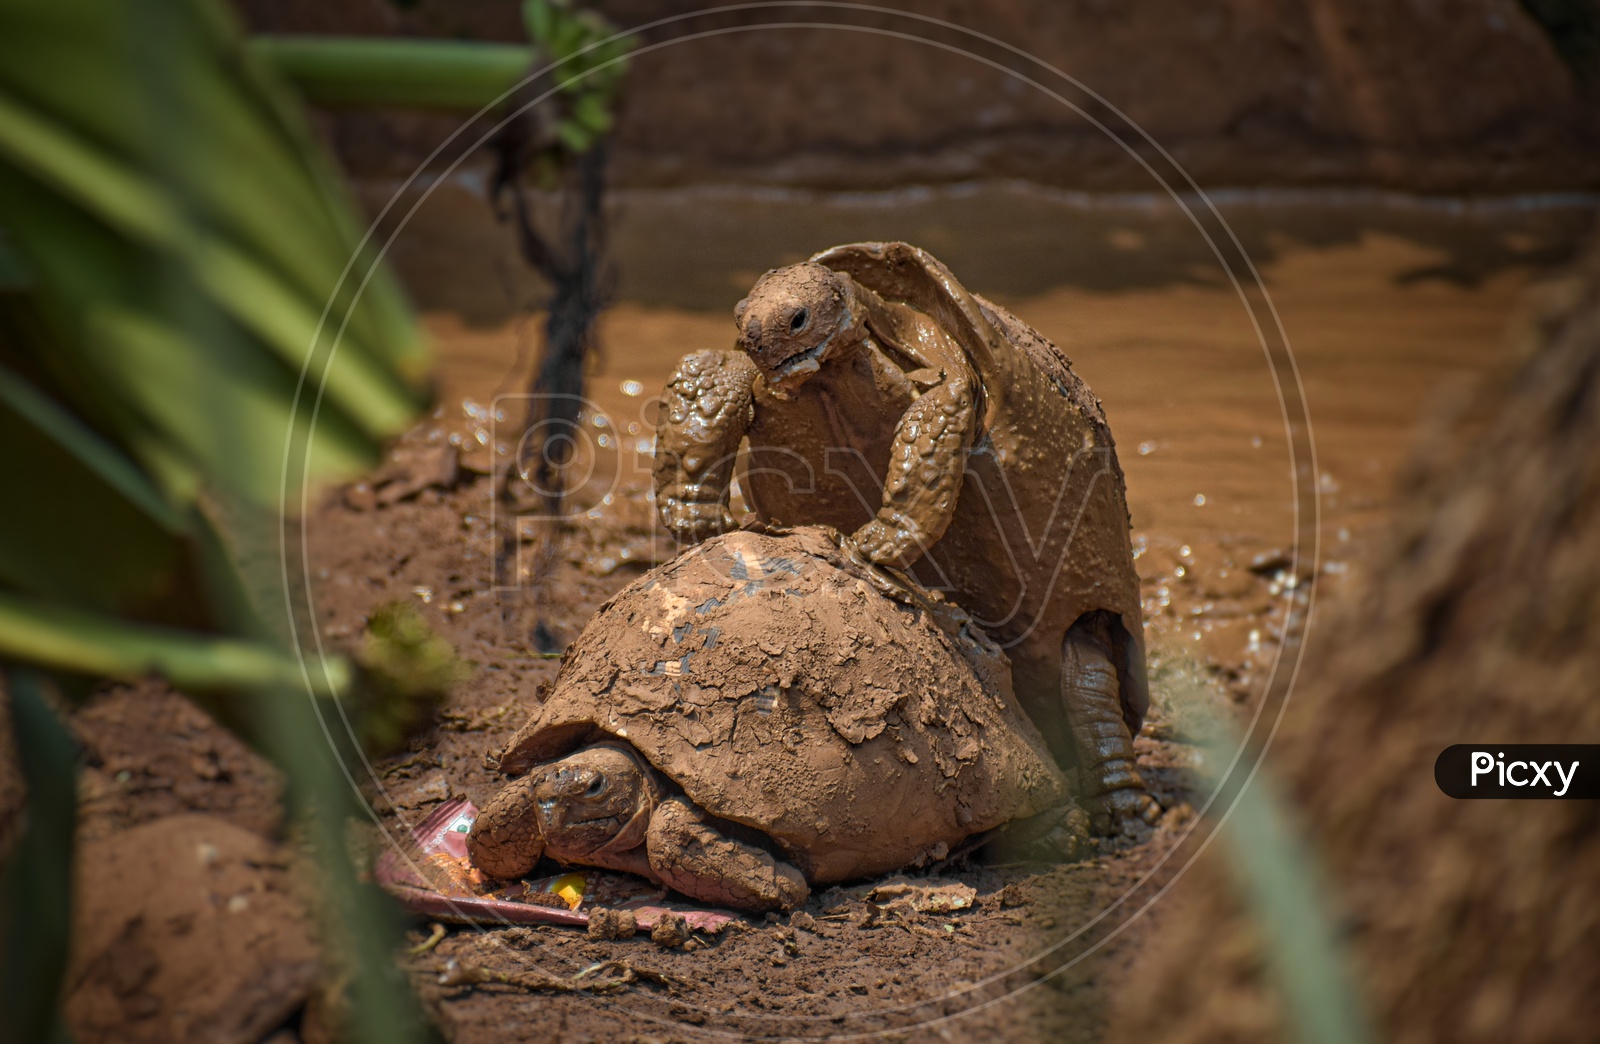 Mating Tortoises sexual impairment organism